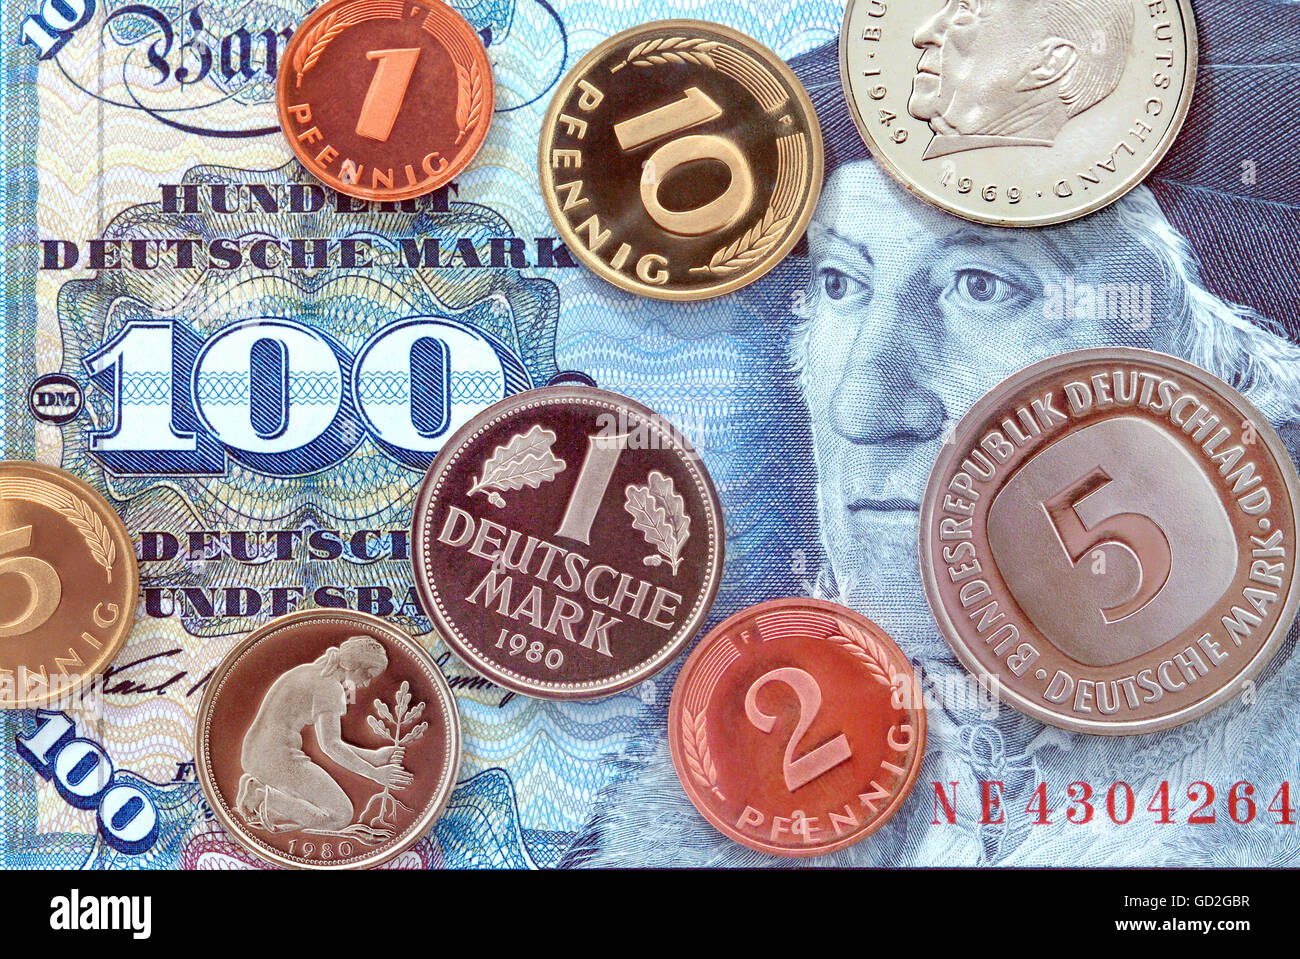 Monnaie / finances,pièces,Allemagne,Mark allemand,100 Mark Banknote,valide de 1950 à 2001,pièces année de la minting: 1980,penny,cent Mark note,cent Deutschmark,cent,cent,cent,cent,cent,cent,cent,cent,cent,cent,cent,1970 cent,cent,cent,cent,cent,cent,cent,cent,cent,cent,cent,cent,cent,cent,dollars 1989,dollars 100,monnaie,monnaie,monnaie,monnaie,monnaie,monnaie,monnaie,monnaie,monnaie,monnaie,monnaie,monnaie,monnaie,monnaie,monnaie,monnaie,monnaie,monnaie,monnaie,monnaie,monnaie,monnaie,monnaie,monnaie,monnaie,monnaie,monnaie,monnaie,monnaie,monnaie,monnaie,monnaie,monnaie,monnaie,monnaie,monnaie,monnaie Banque D'Images